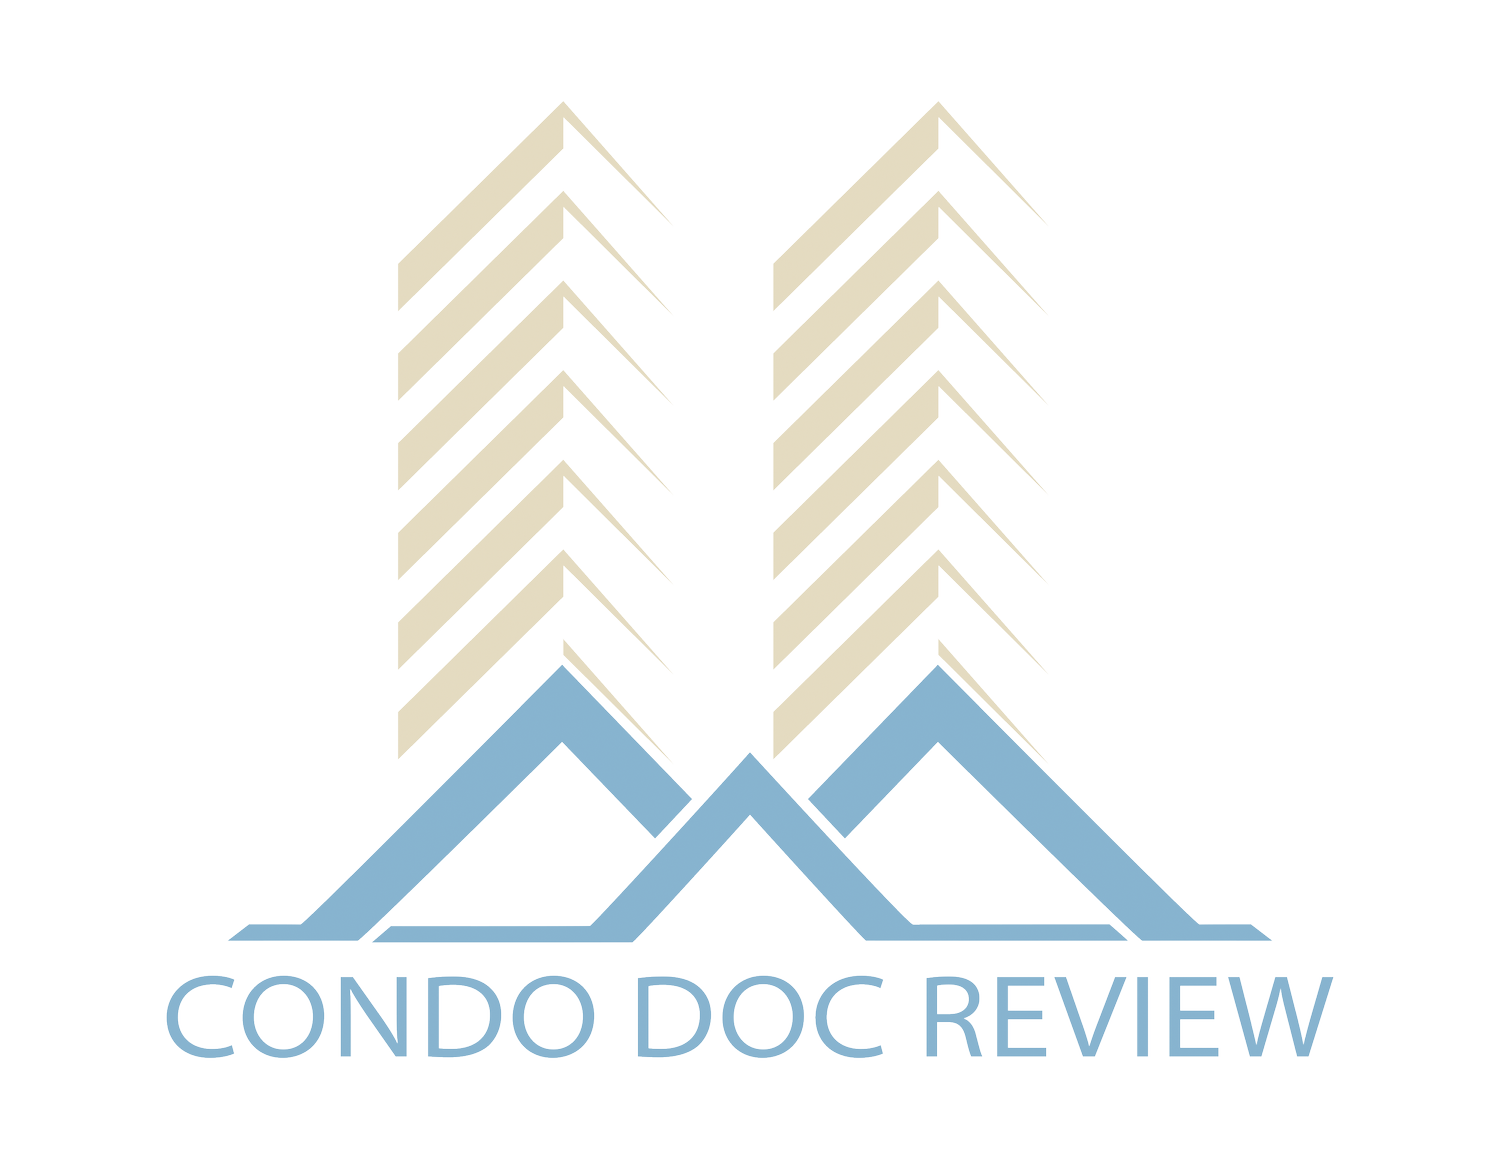 Condo Doc Review Ltd.